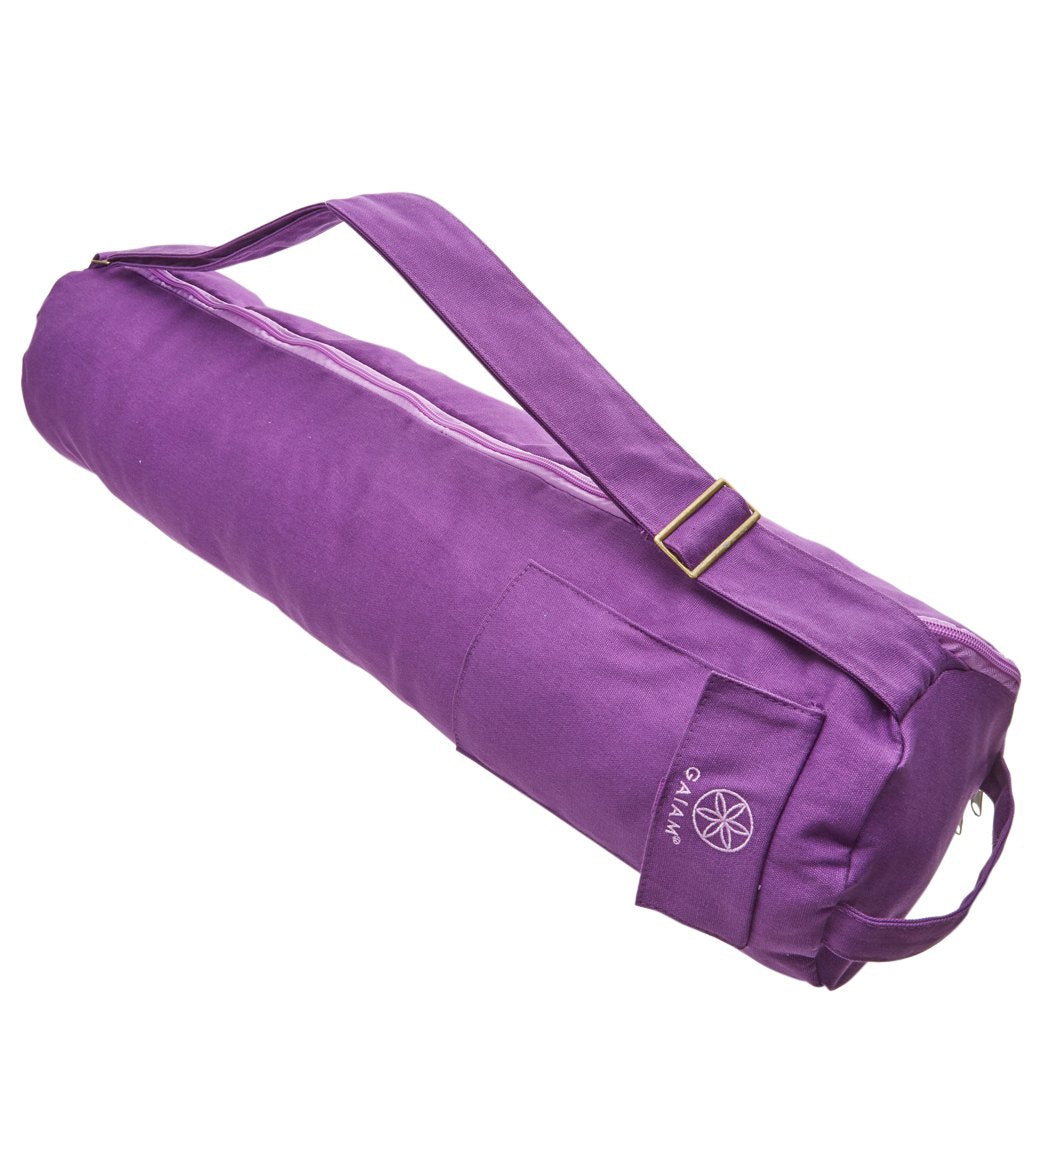 Gaiam Breathable Yoga Mat Bag  Yoga accessories, Yoga mat bag, Mat bag